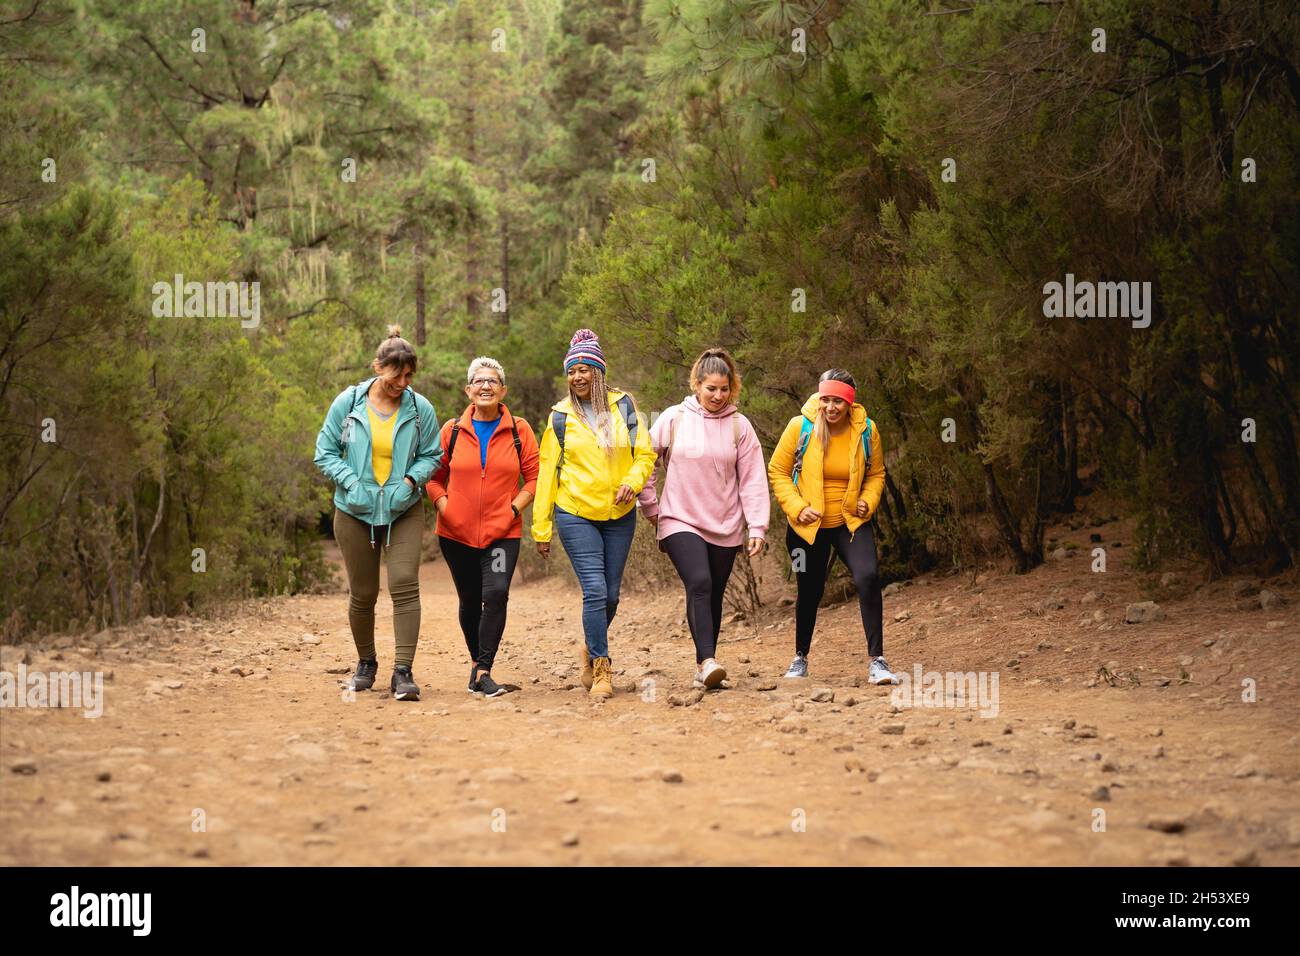 Gruppe von Frauen mit unterschiedlichen Alters und Ethnien Spaß beim Wandern in nebligen Wald - Abenteuer und Reisen Menschen Konzept Stockfoto